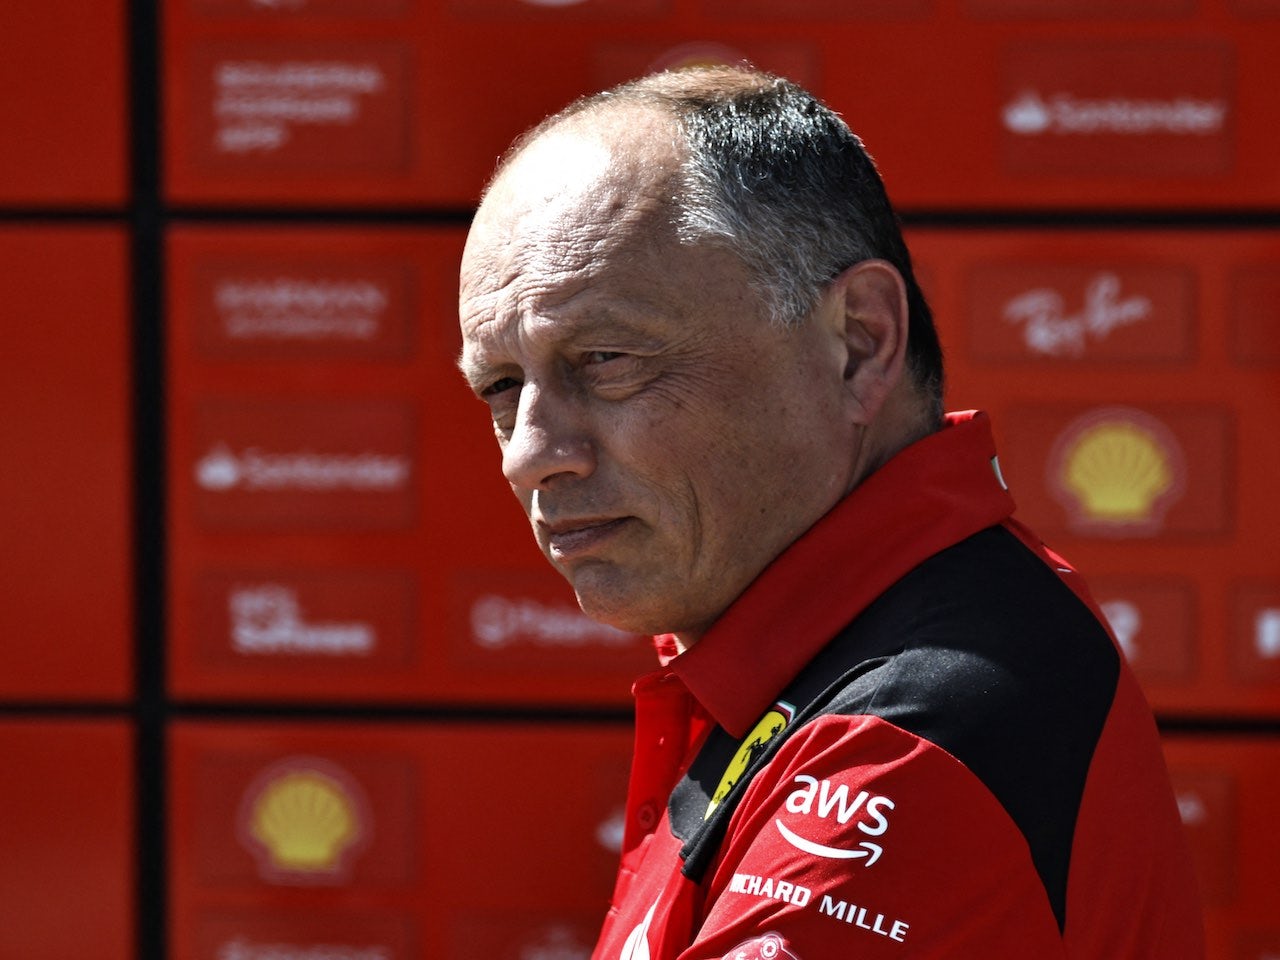 Vasseur denies being disempowered at Ferrari